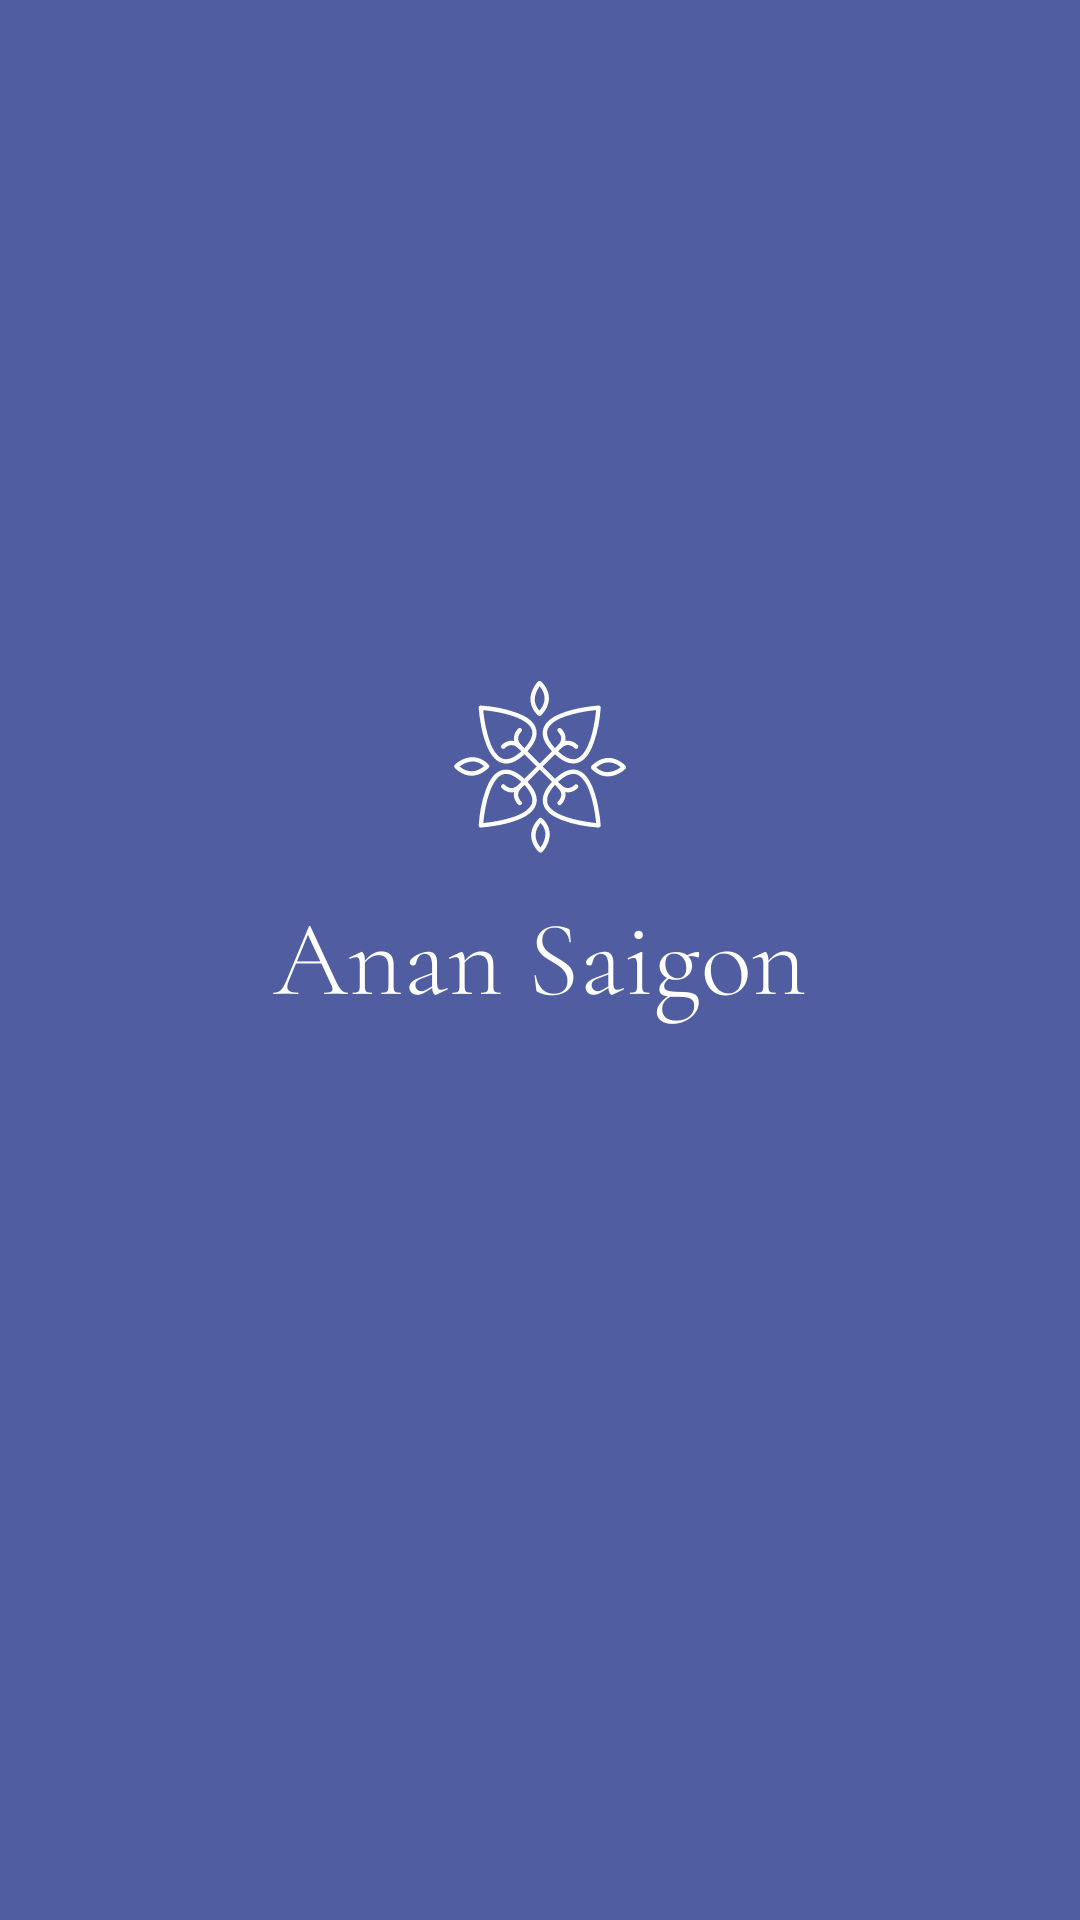 Anan Saigon